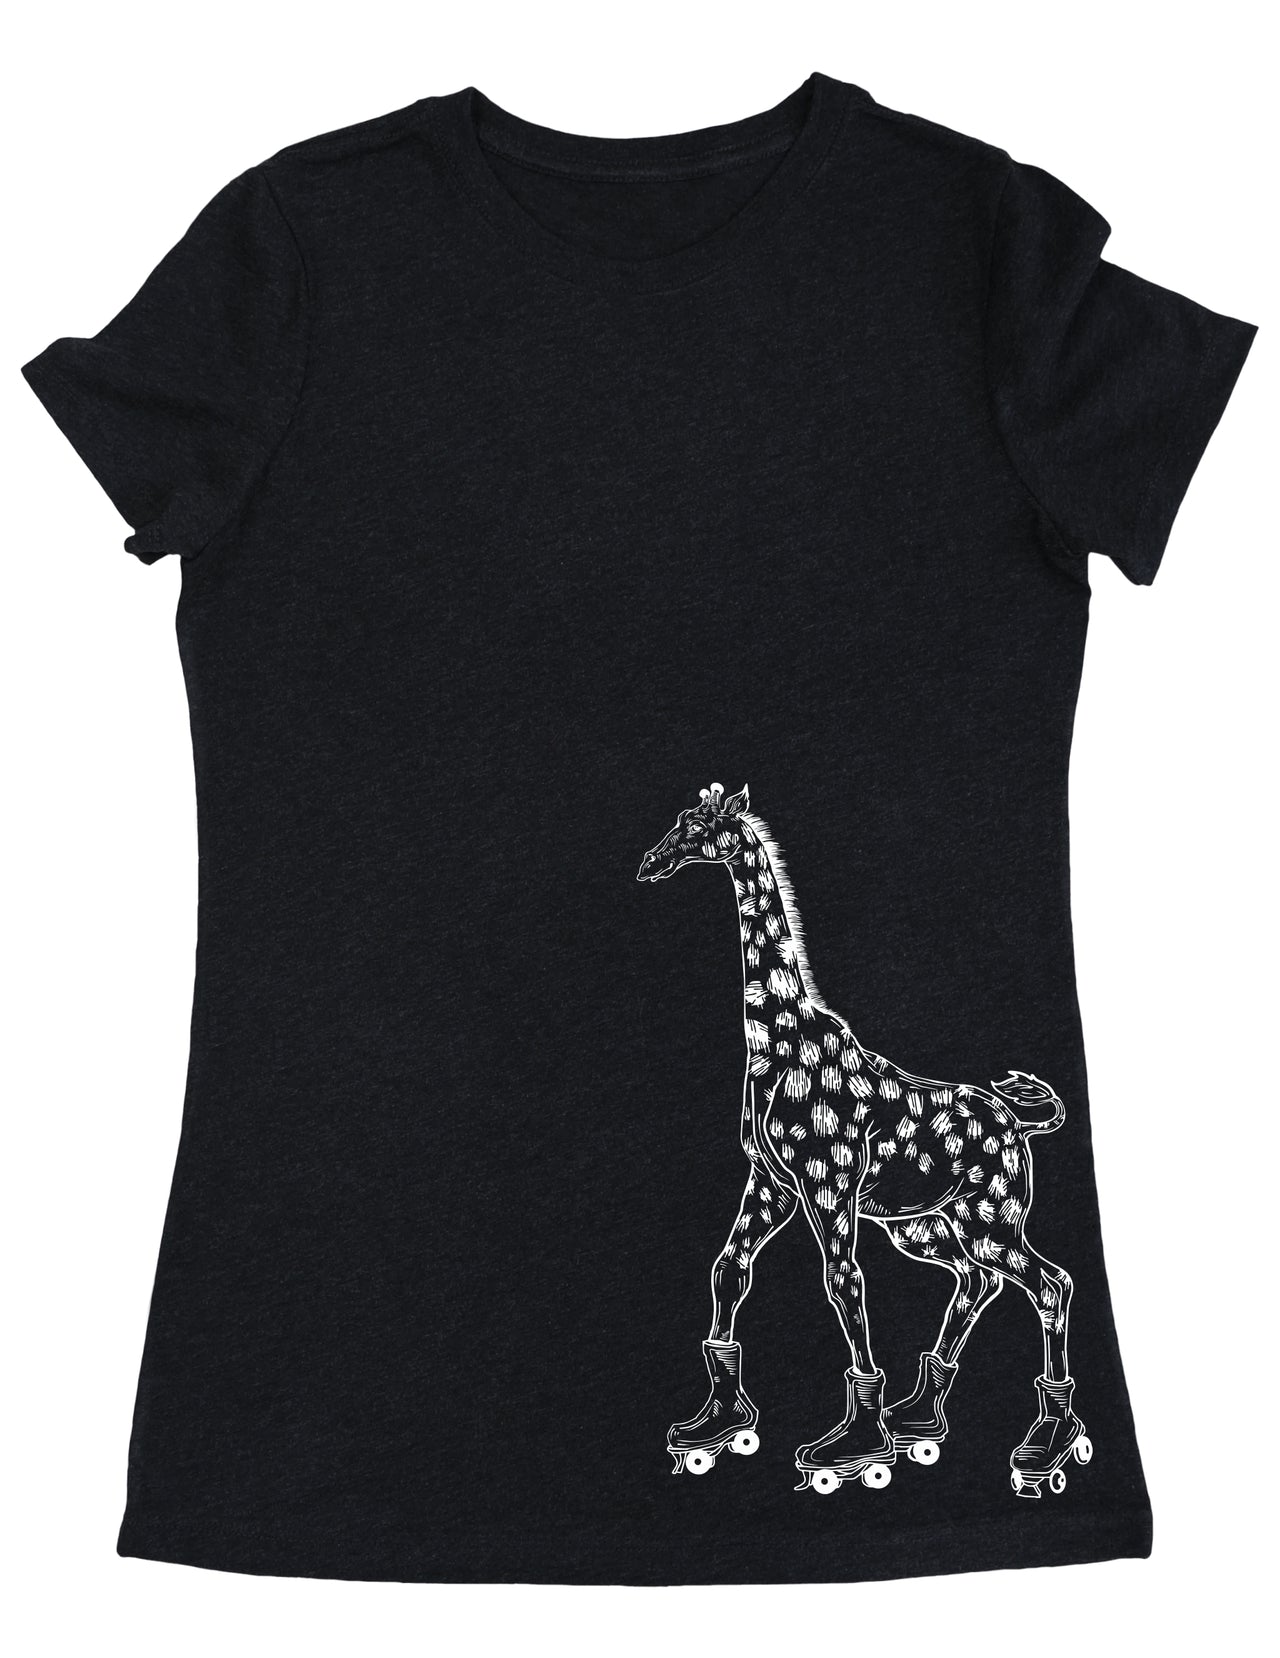 SEEMBO Giraffe Skater Skating Roller Skates Women's Tri-Blend T-Shirt Side Print